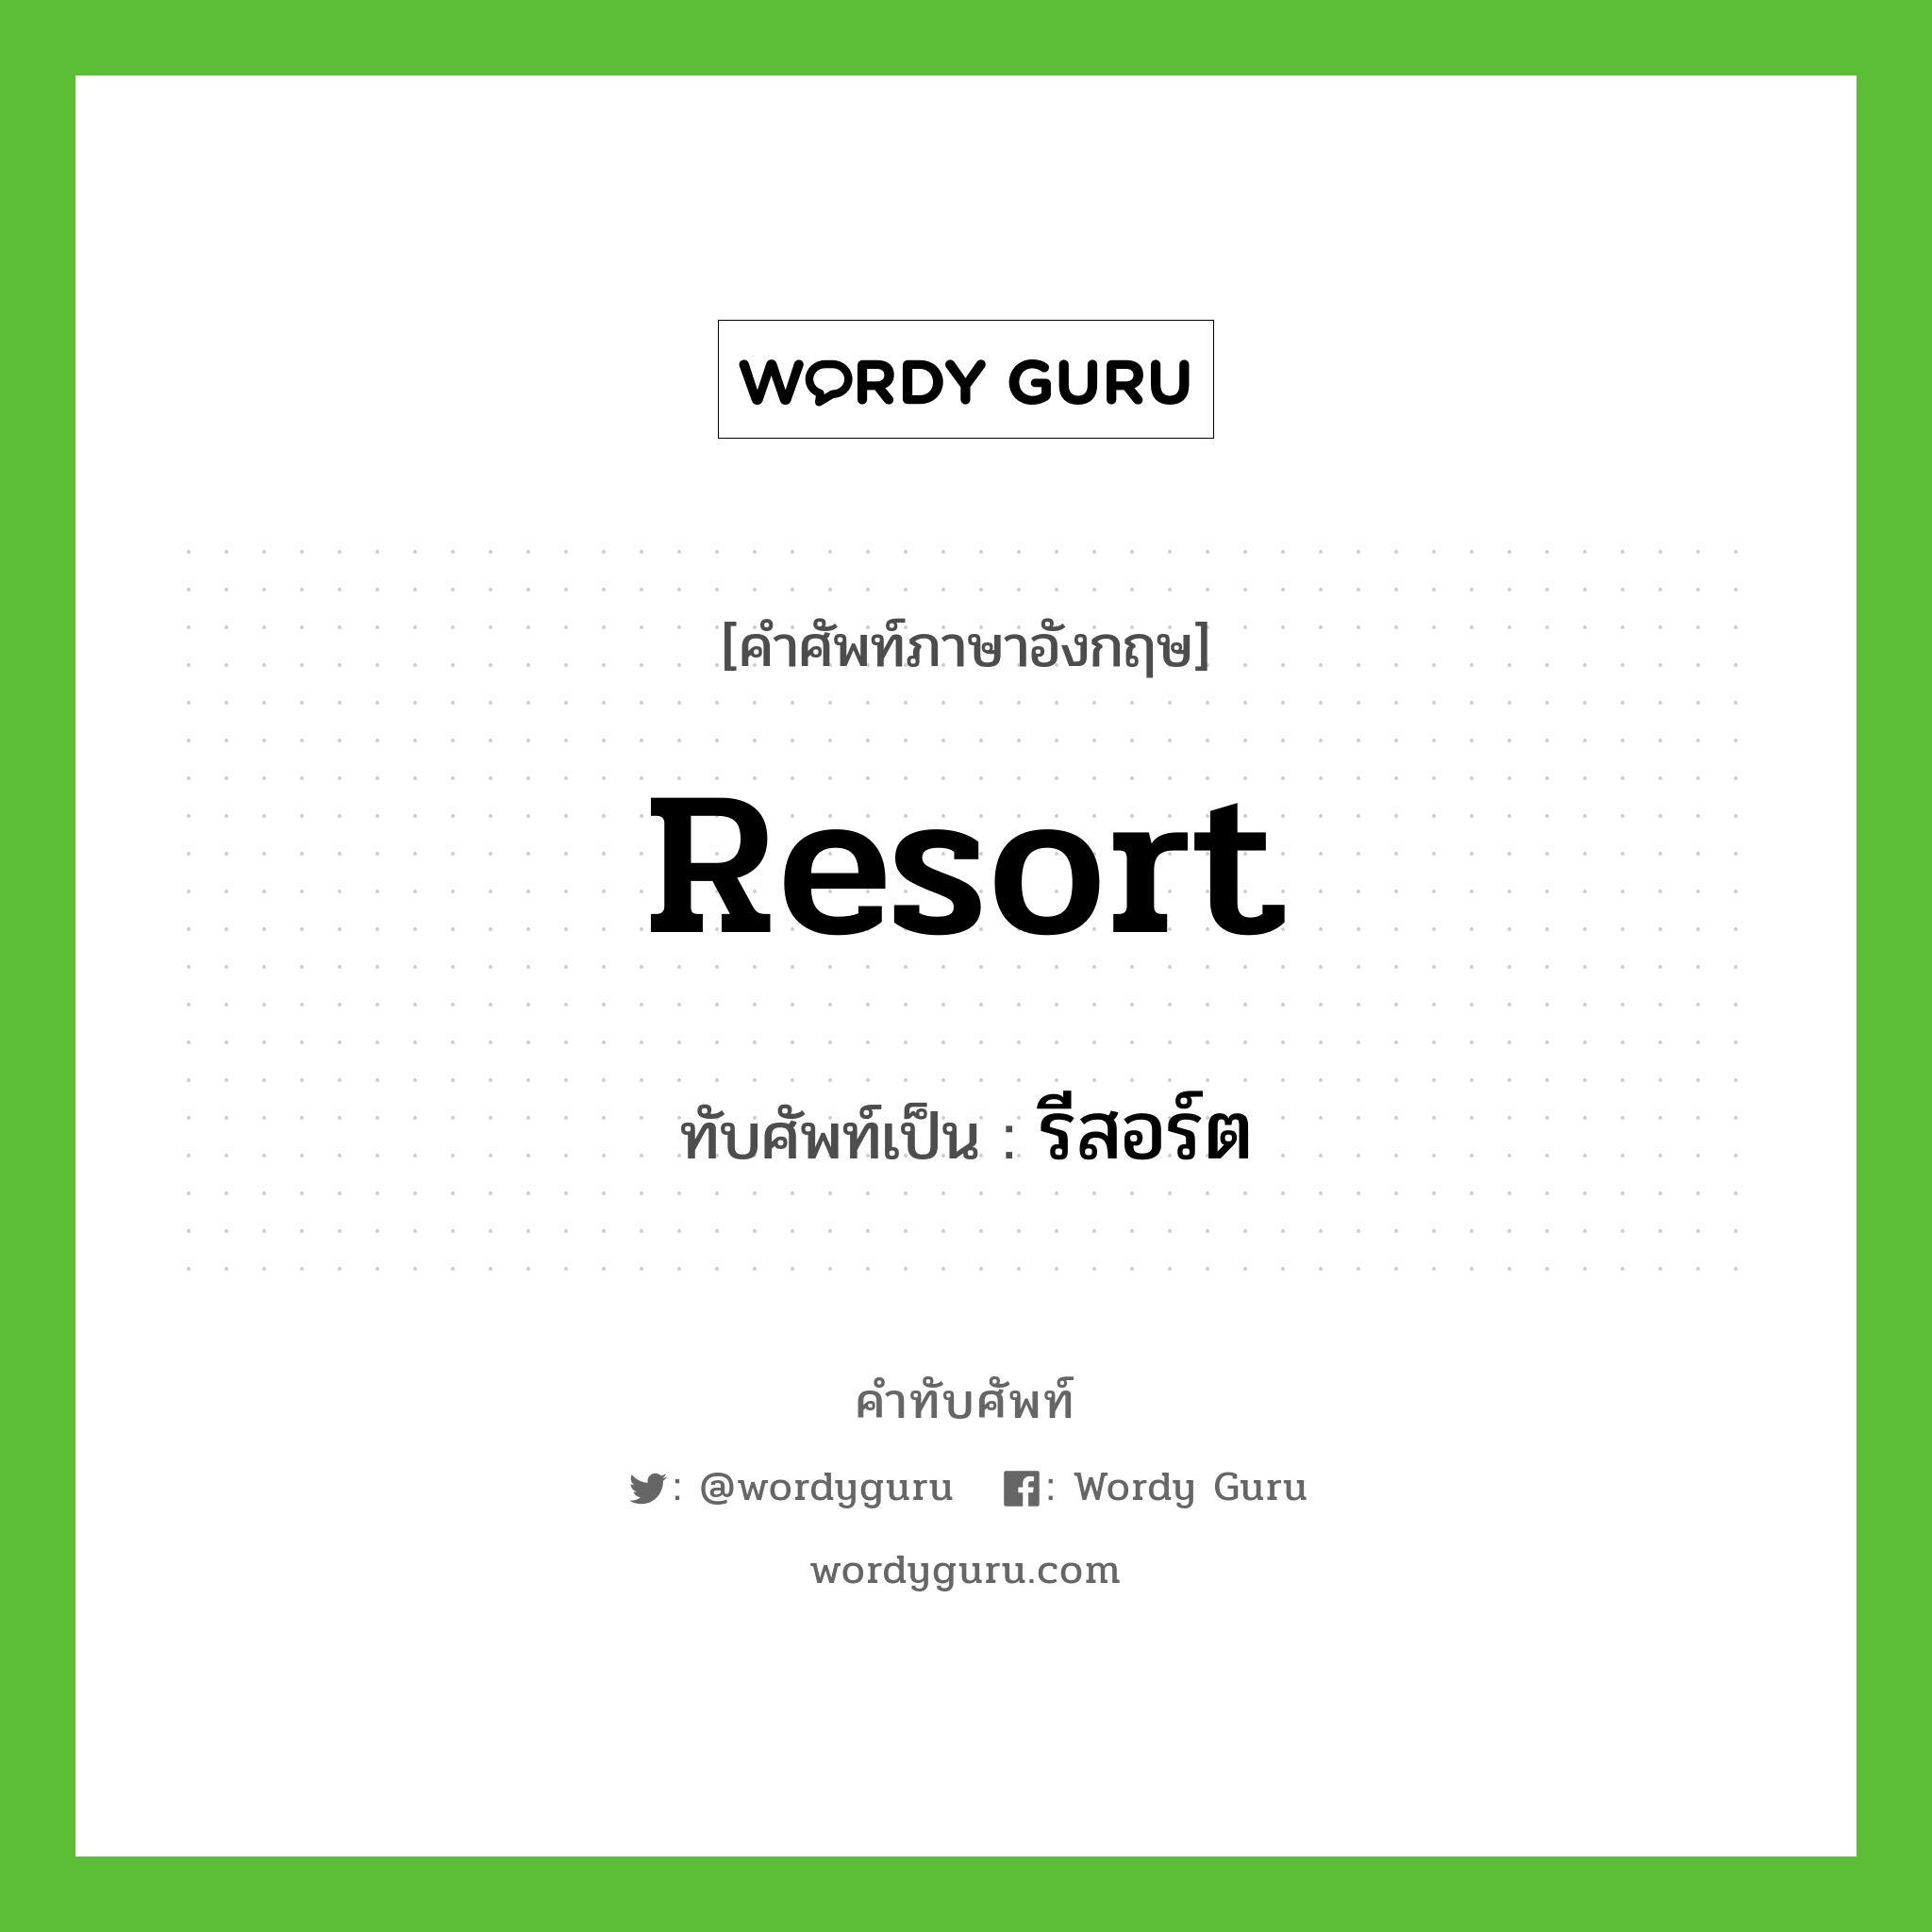 resort เขียนเป็นคำไทยว่าอะไร?, คำศัพท์ภาษาอังกฤษ resort ทับศัพท์เป็น รีสอร์ต